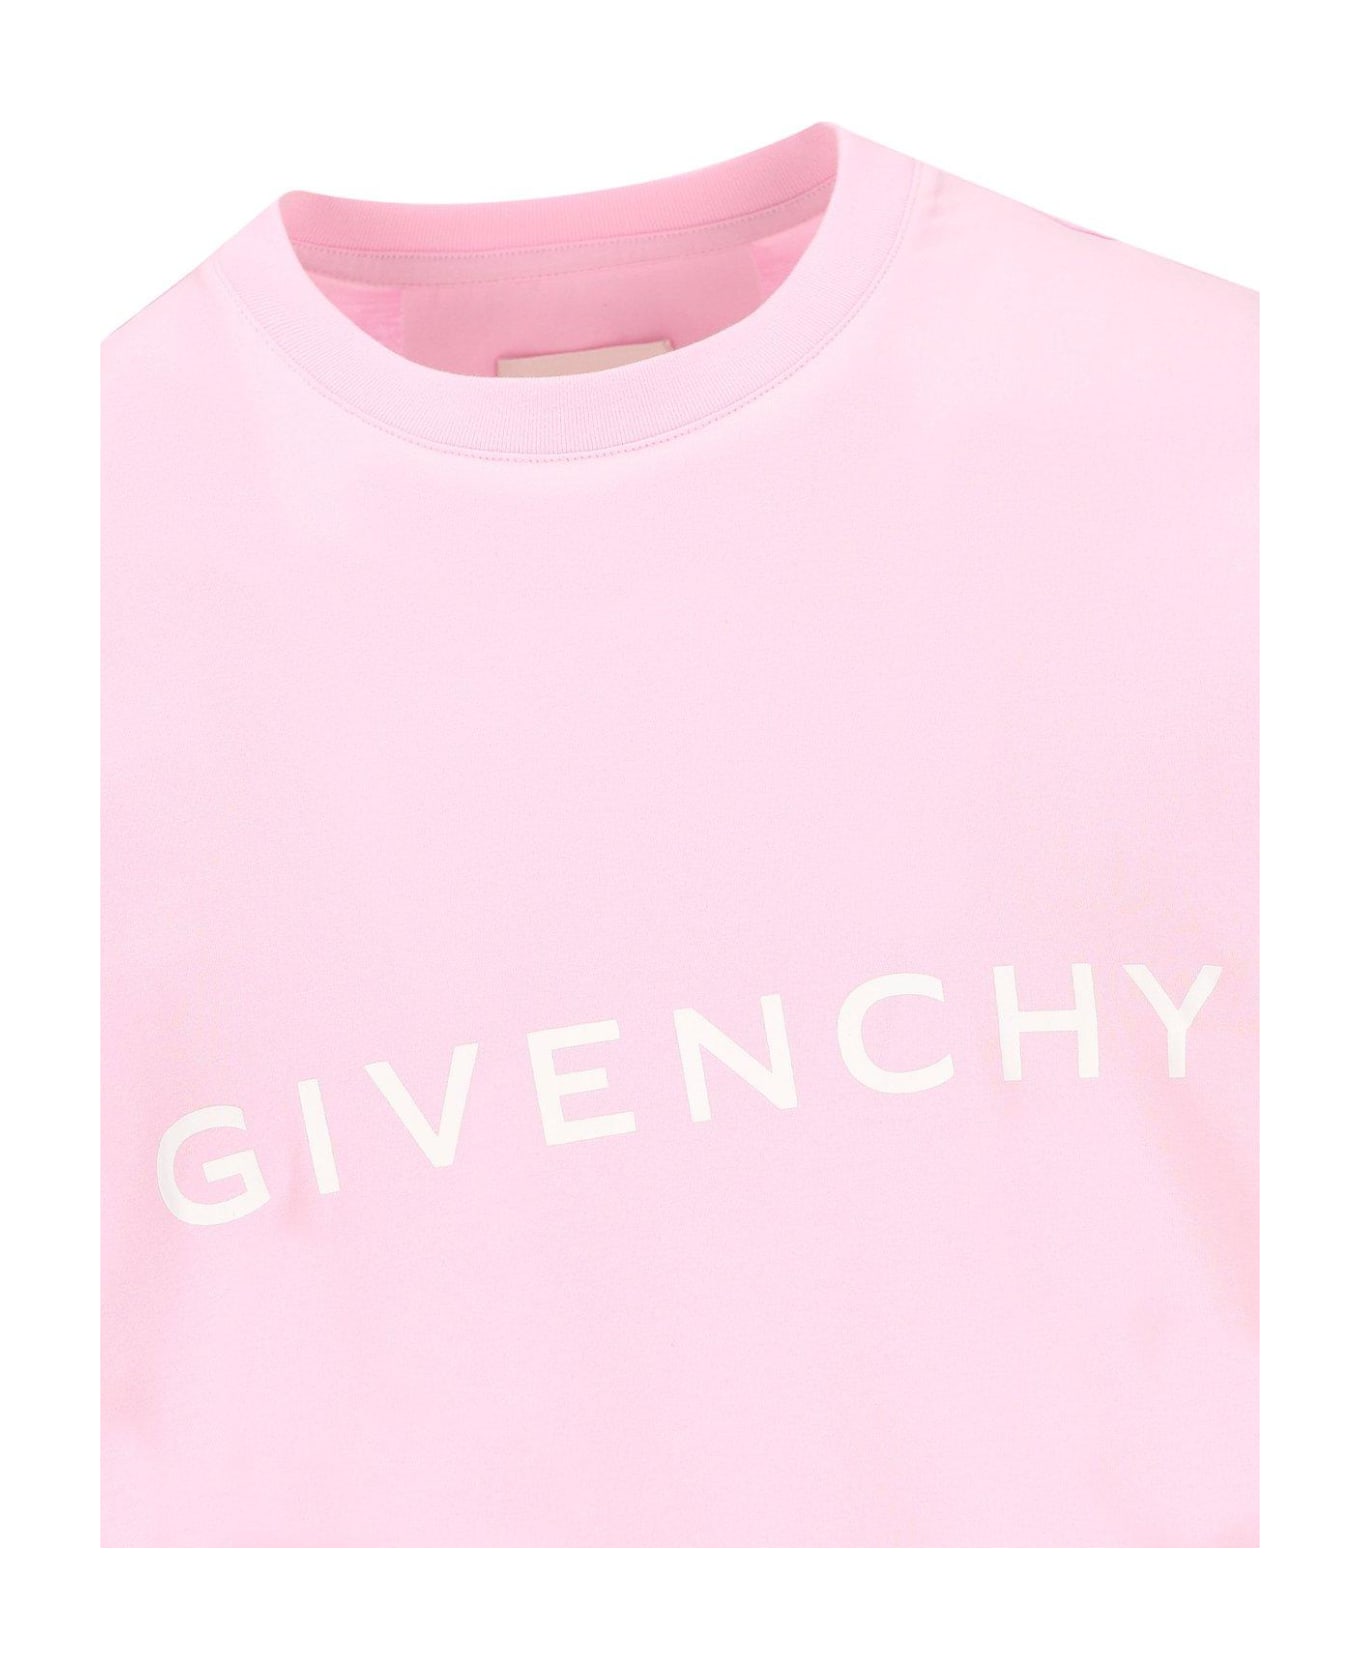 Givenchy Logo Printed Crewneck T-shirt - Rosa